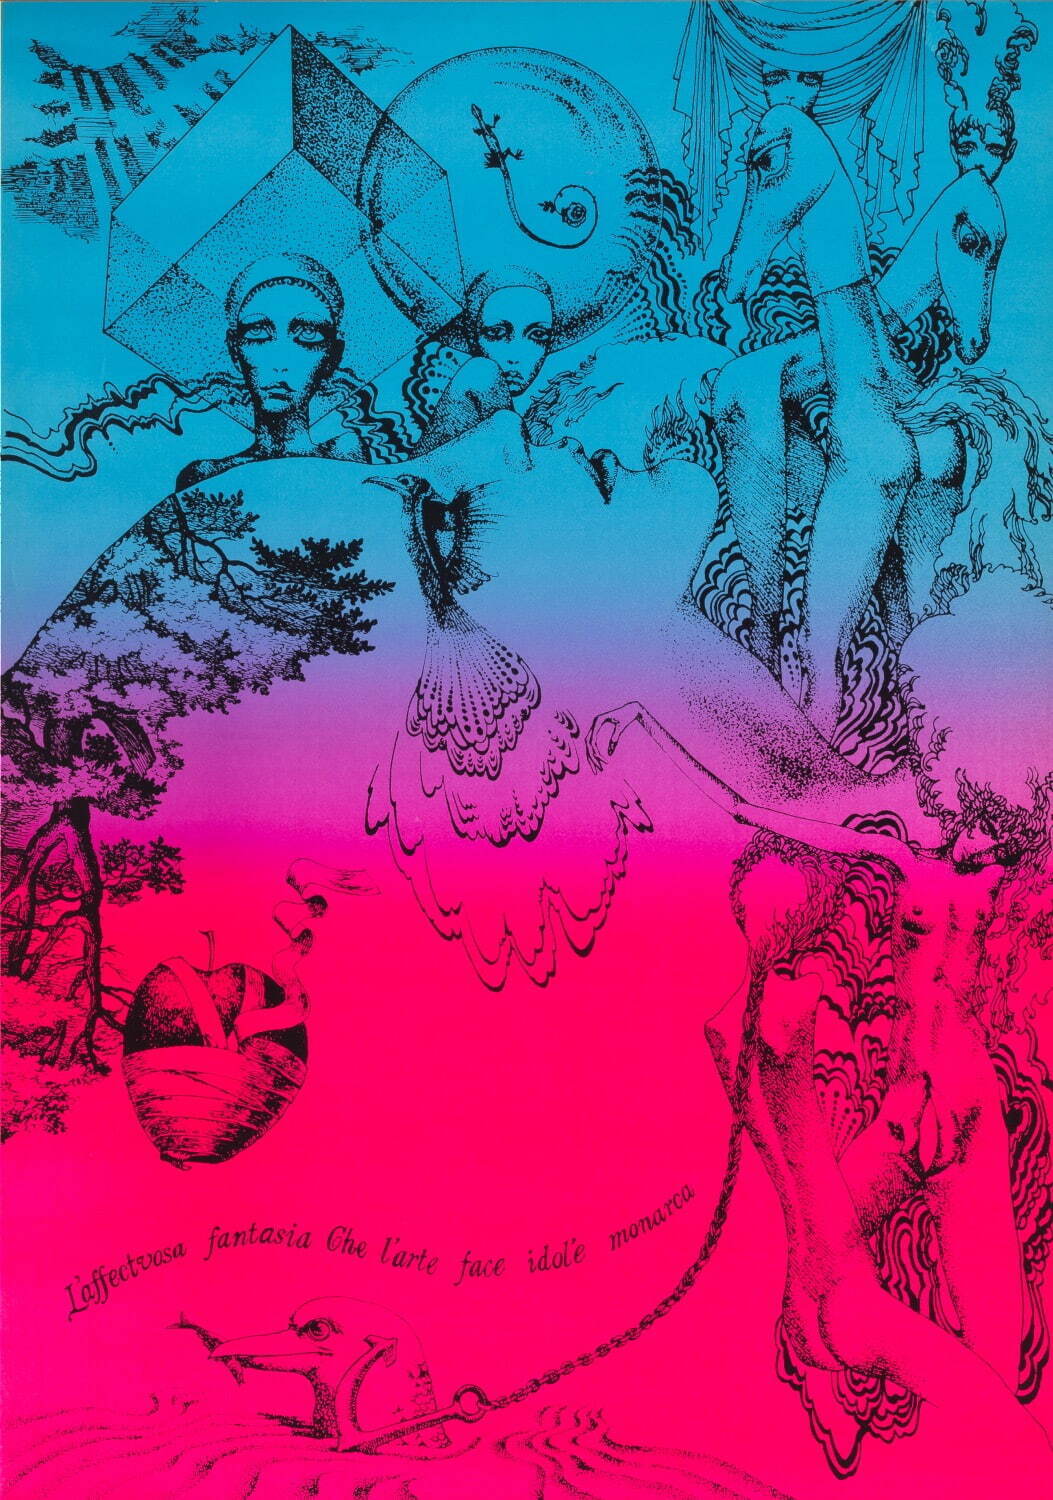 宇野亞喜良 「ミケランジェロの言葉」ポスター 1968年
©AQUIRAX